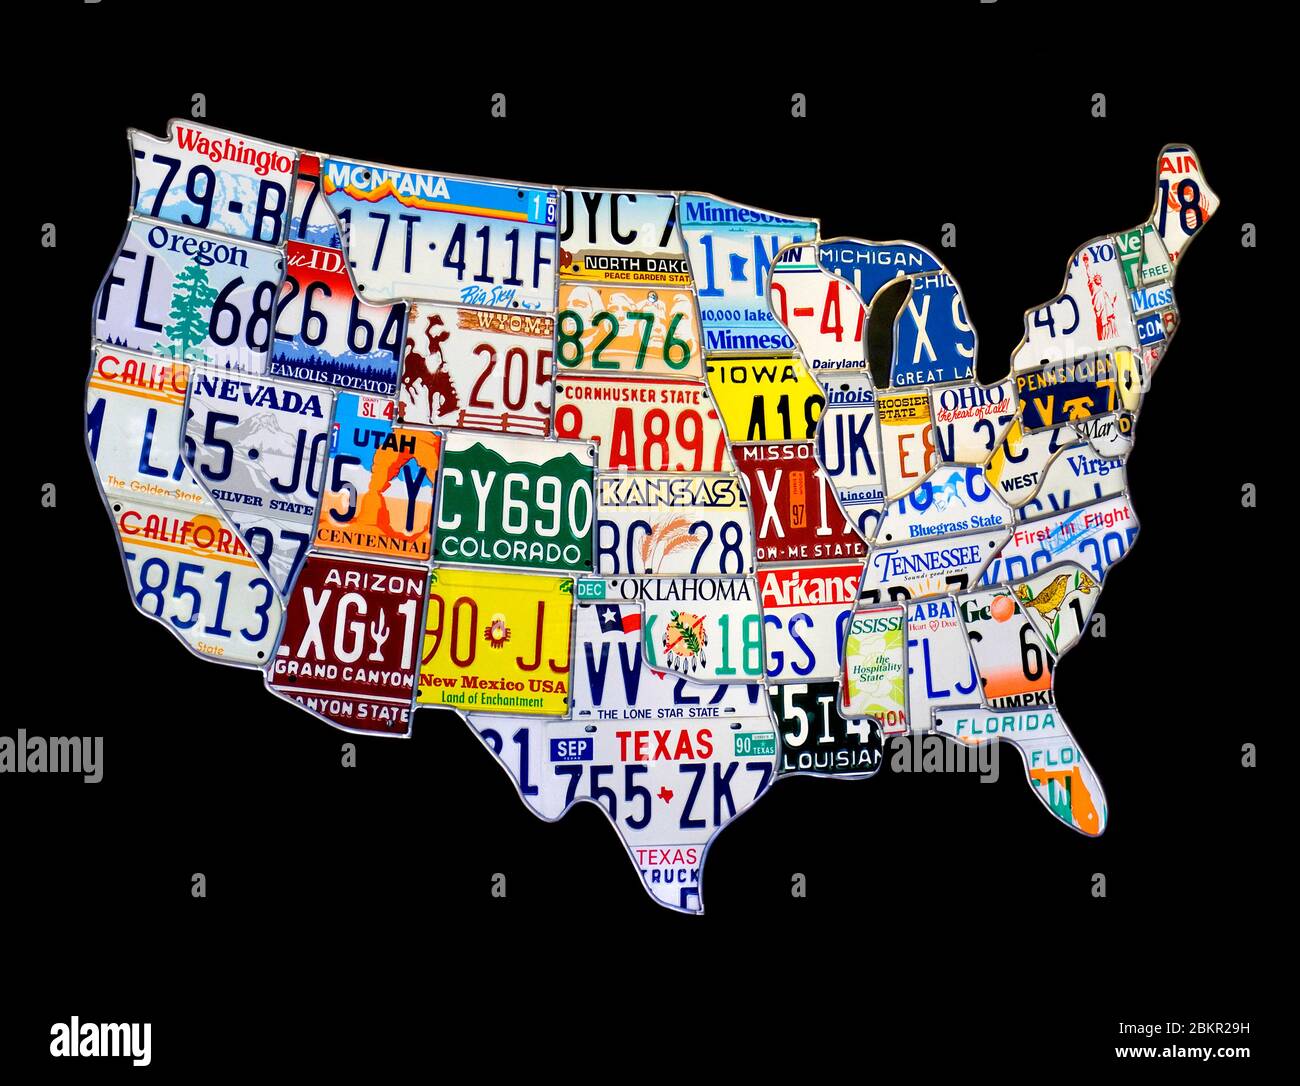 TARGHE PER AUTO USA ART Map degli Stati Uniti d'America realizzato da un collage di targhe per veicoli dislocate geograficamente Foto Stock